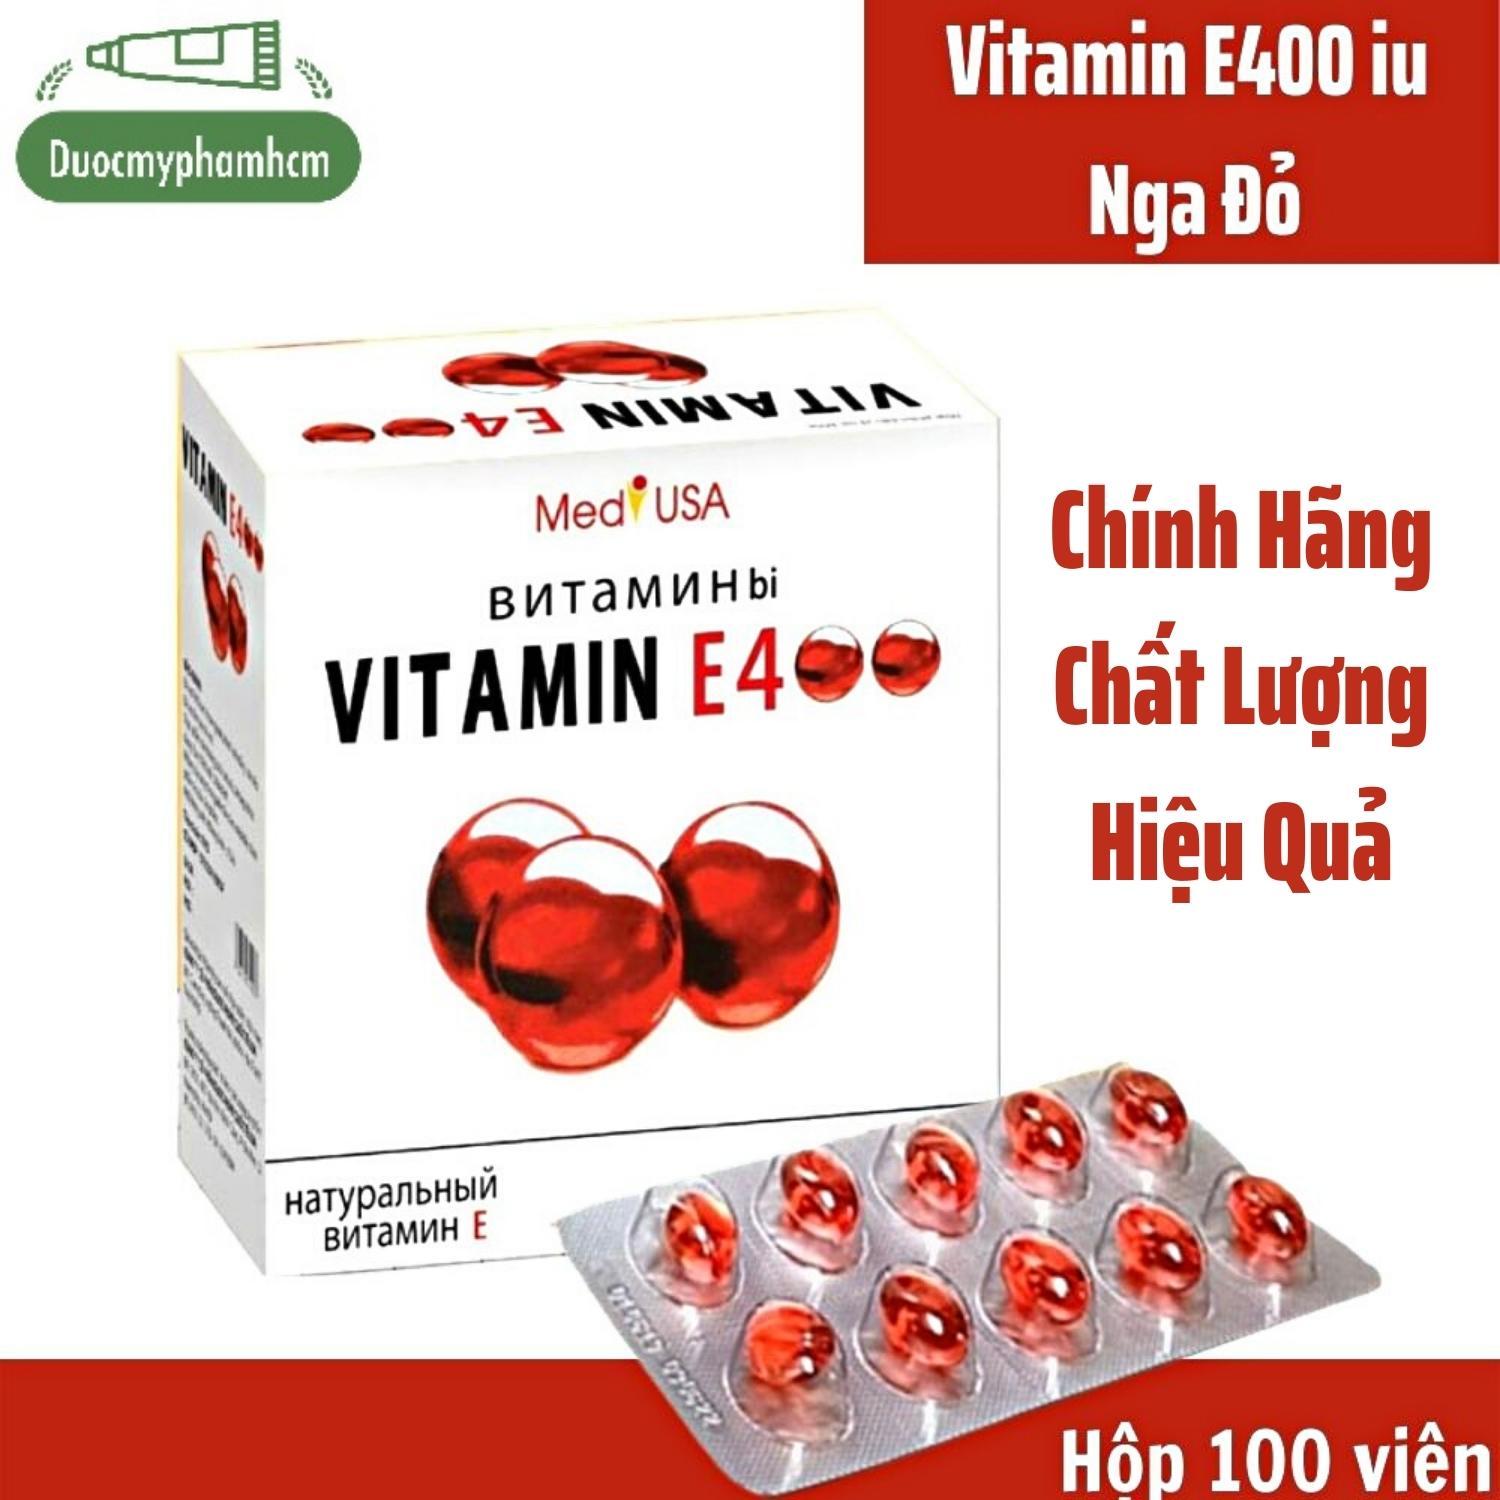 Vitamin E Đỏ 400iu, Viên Uống Đẹp Da Ngăn Ngừa Lão Hóa, Cấp Nước Cho Da- Chính Hãng MediUSA - Hộp 100 viên